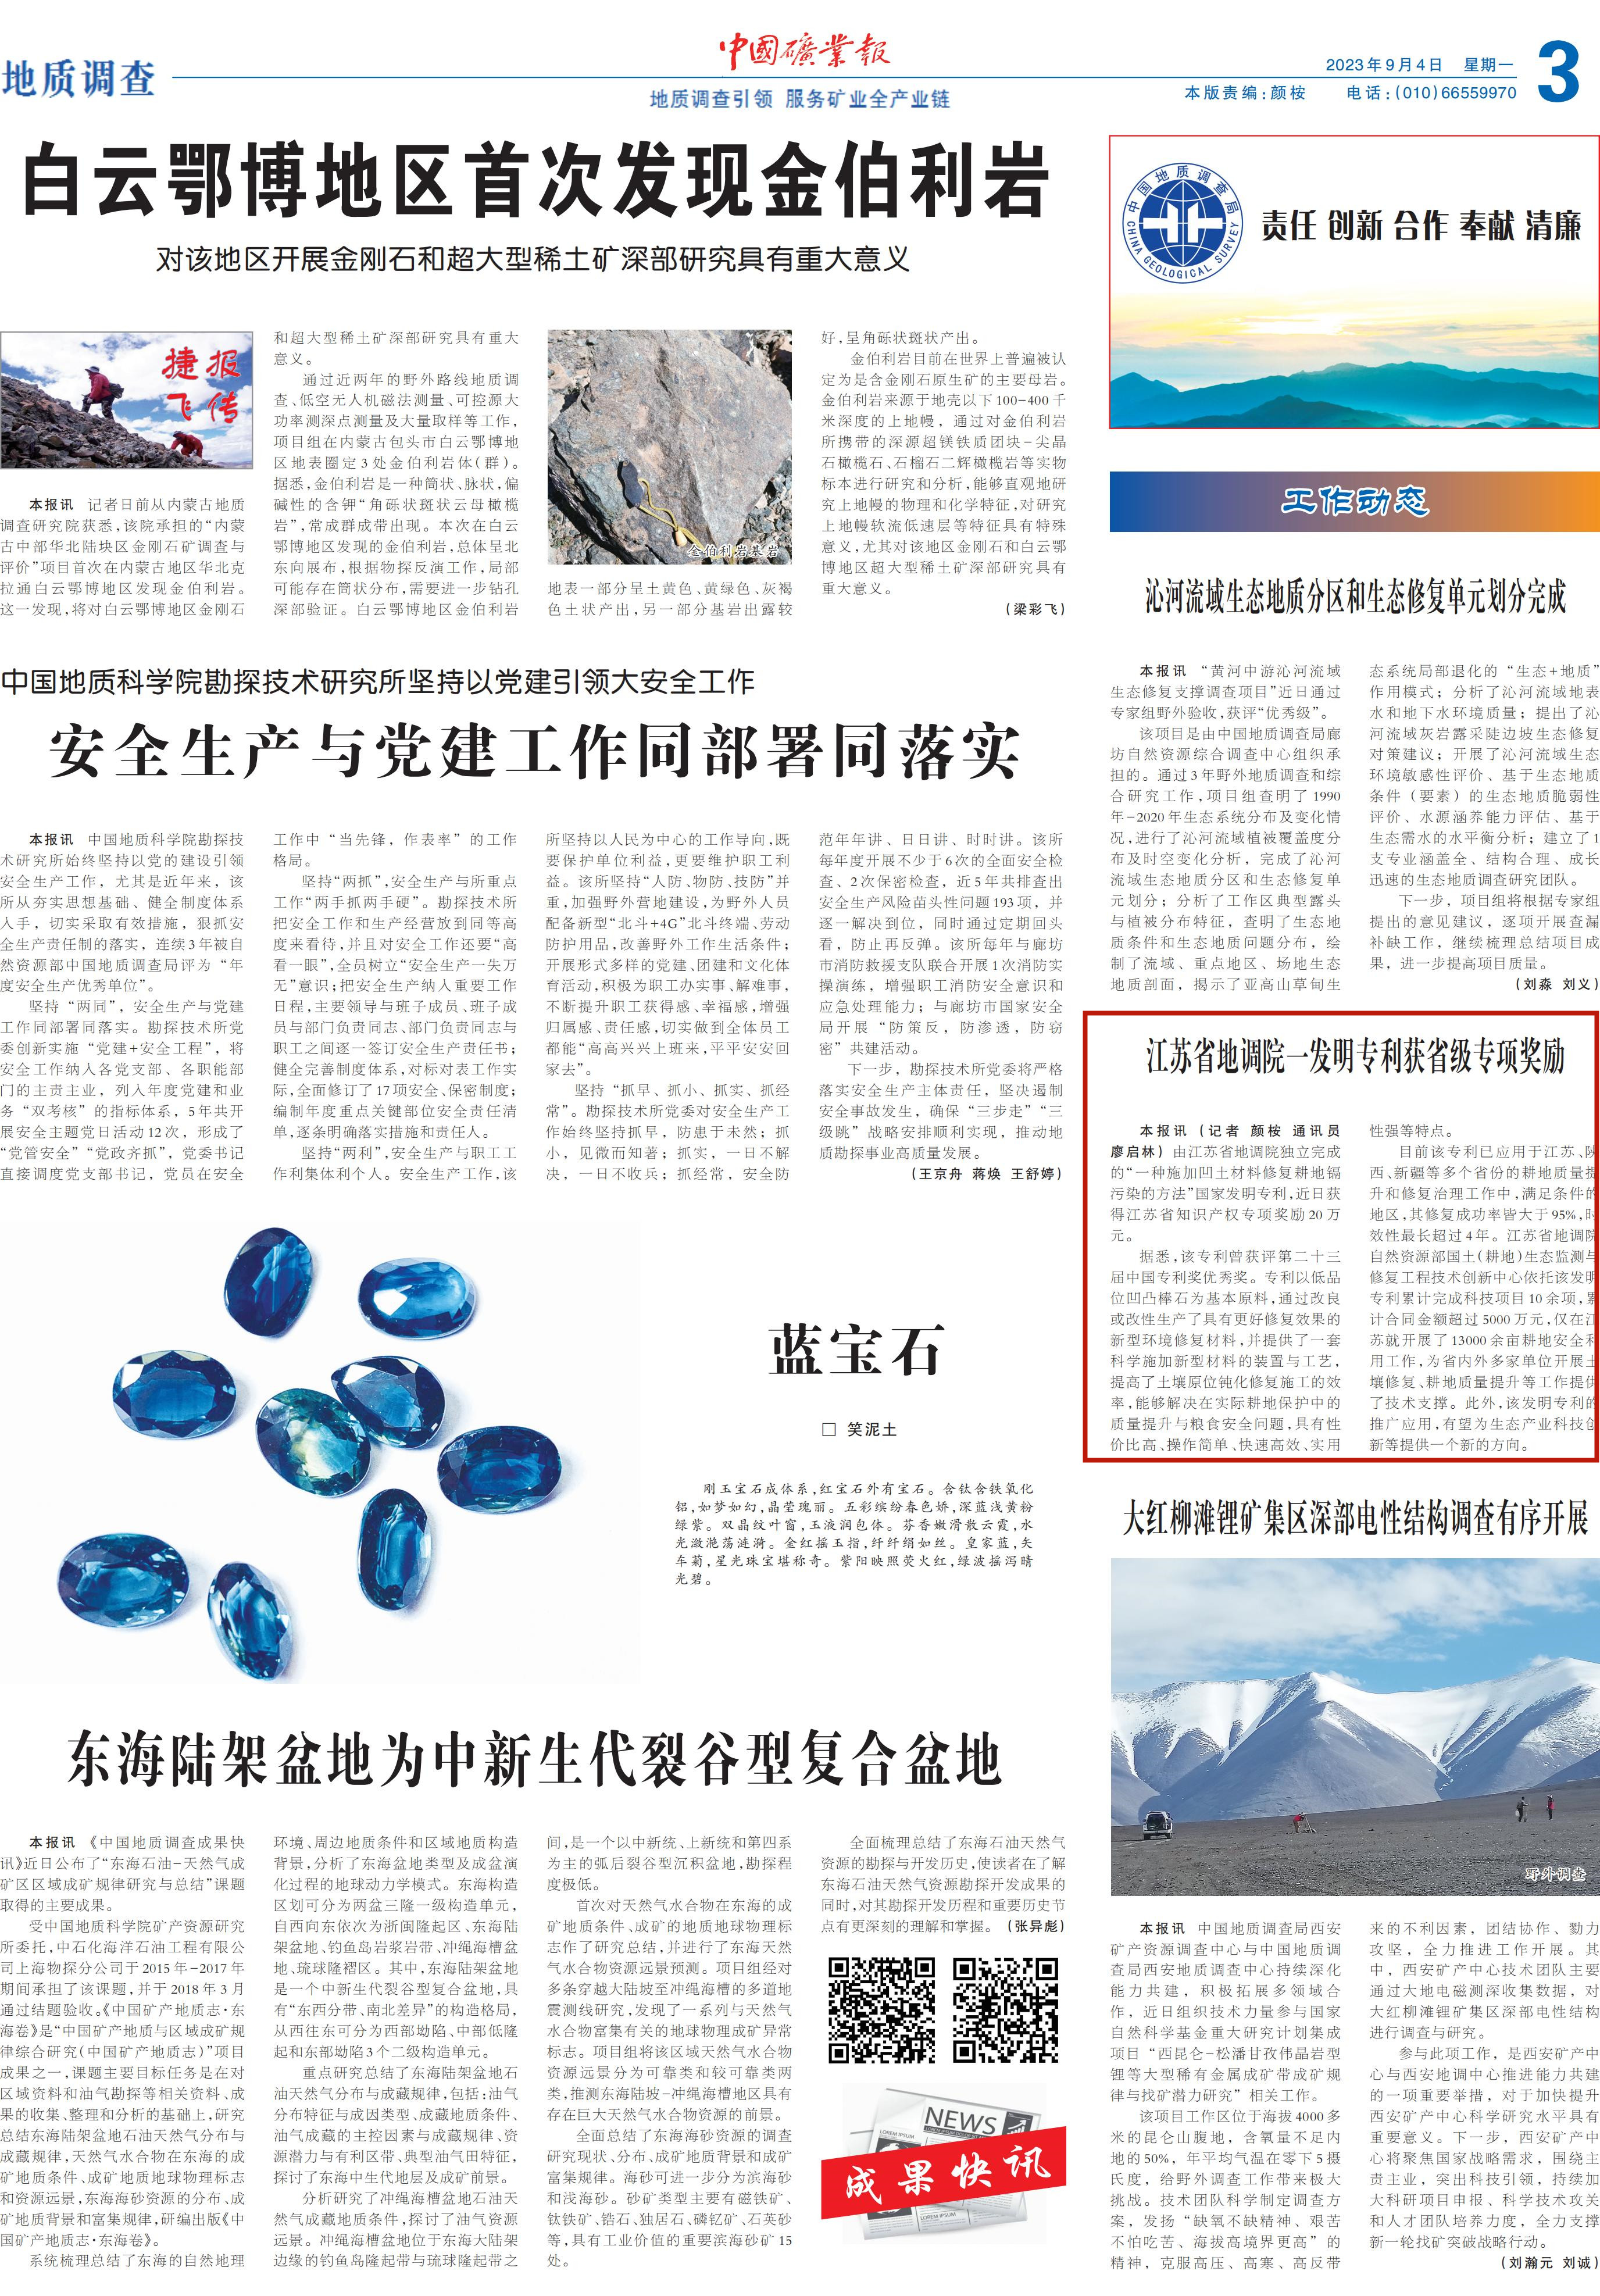 《中国矿业报》报道江苏省地调院一发明专利获省级专项奖励